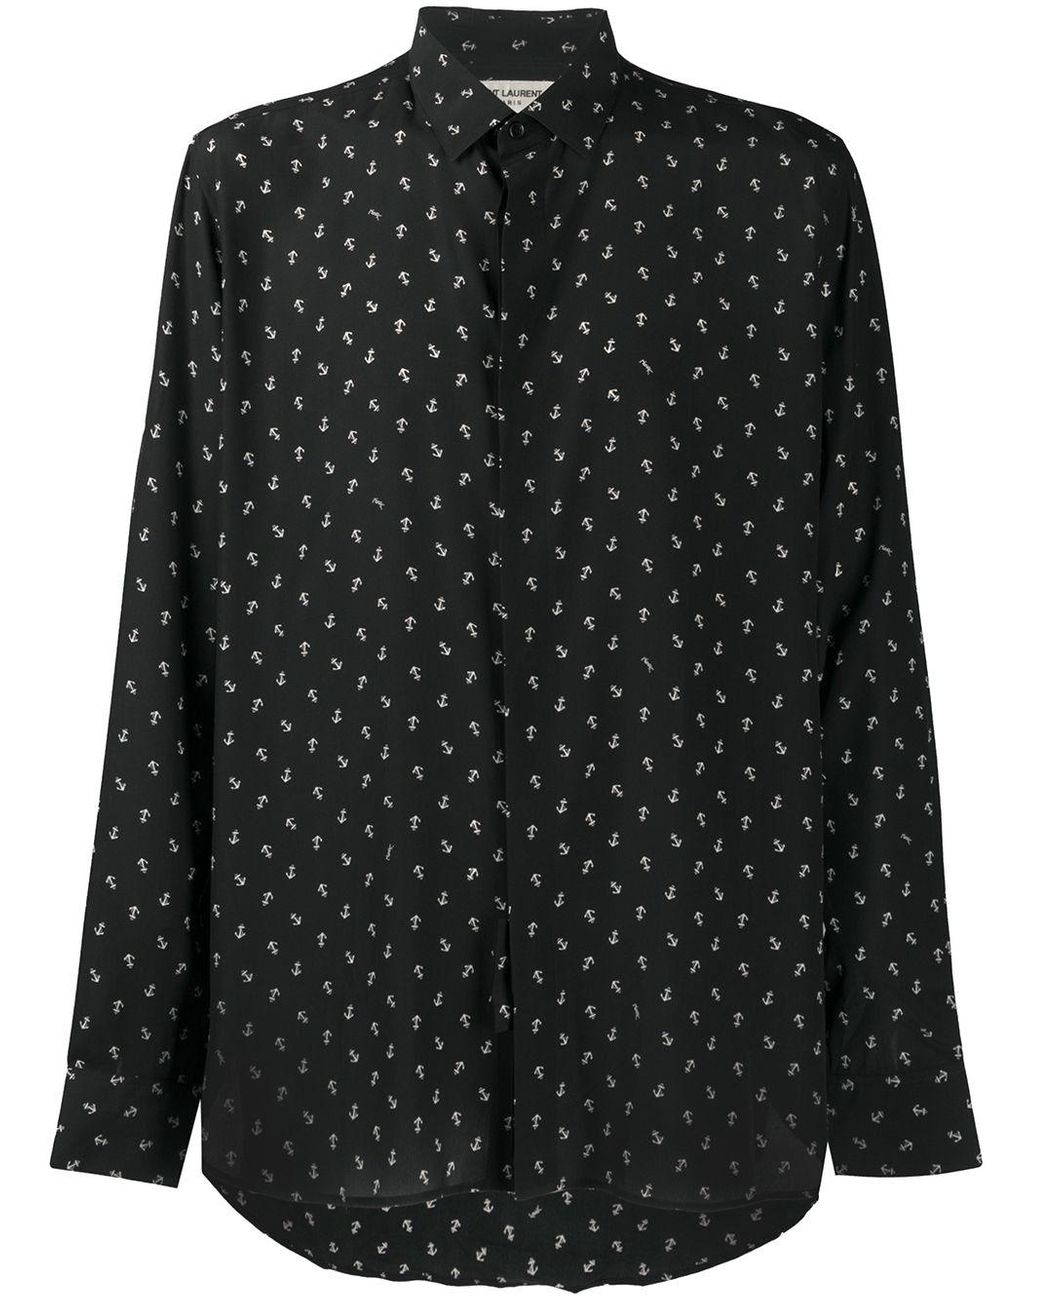 Saint Laurent Silk Shirt in Black for Men - Lyst